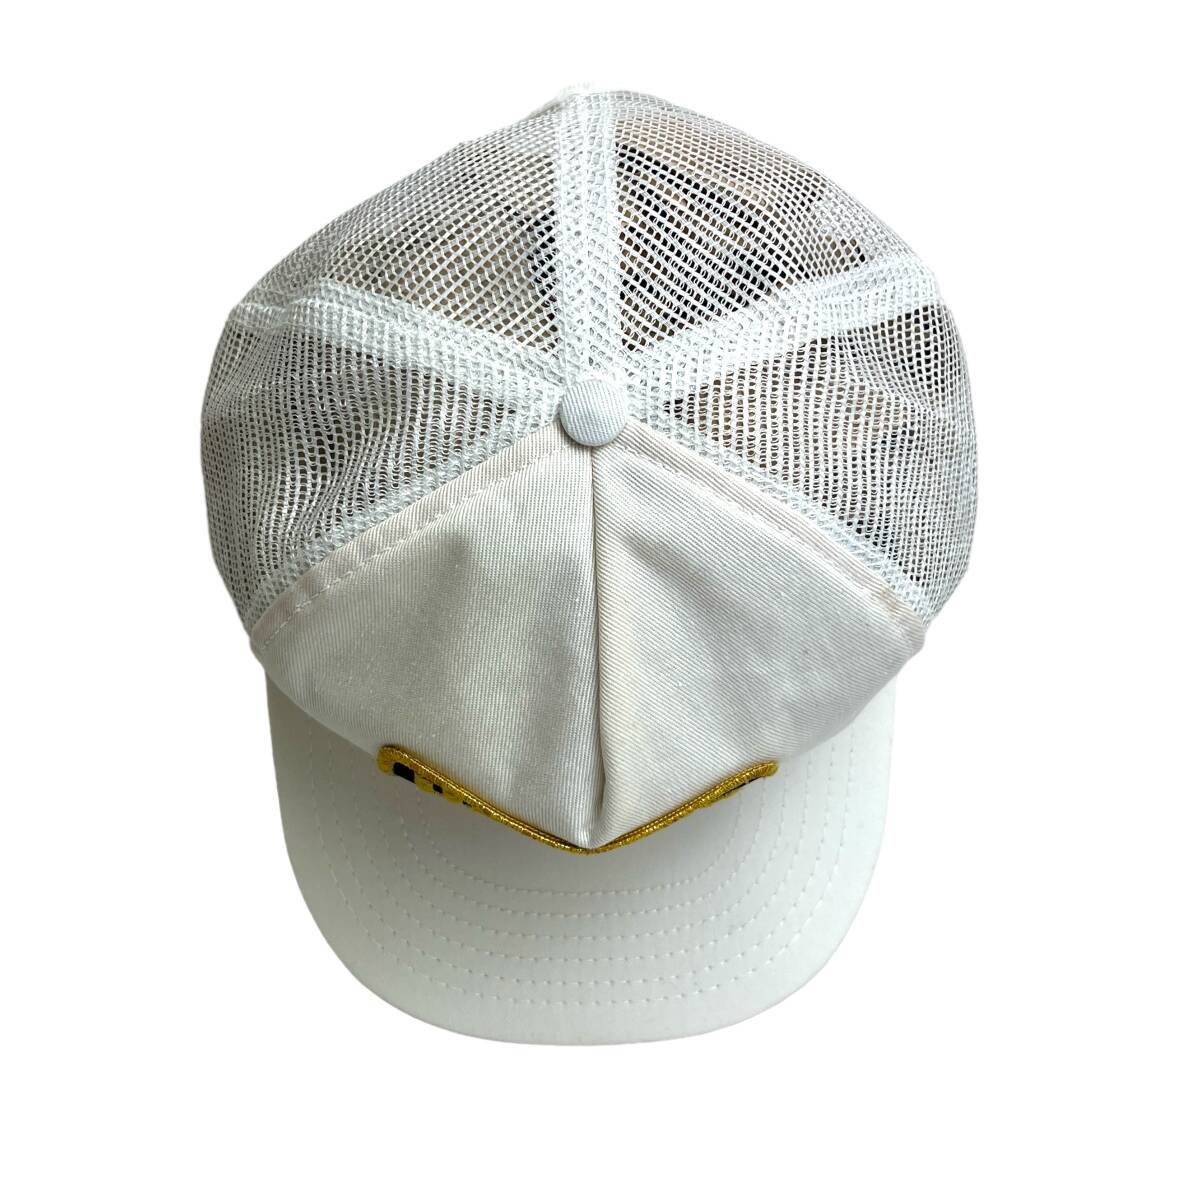 【キャップ/帽子】アメリカ製 Havoline (ハボリン) TEXACO トラッカーキャップ メッシュキャップ ワッペン ホワイト 白